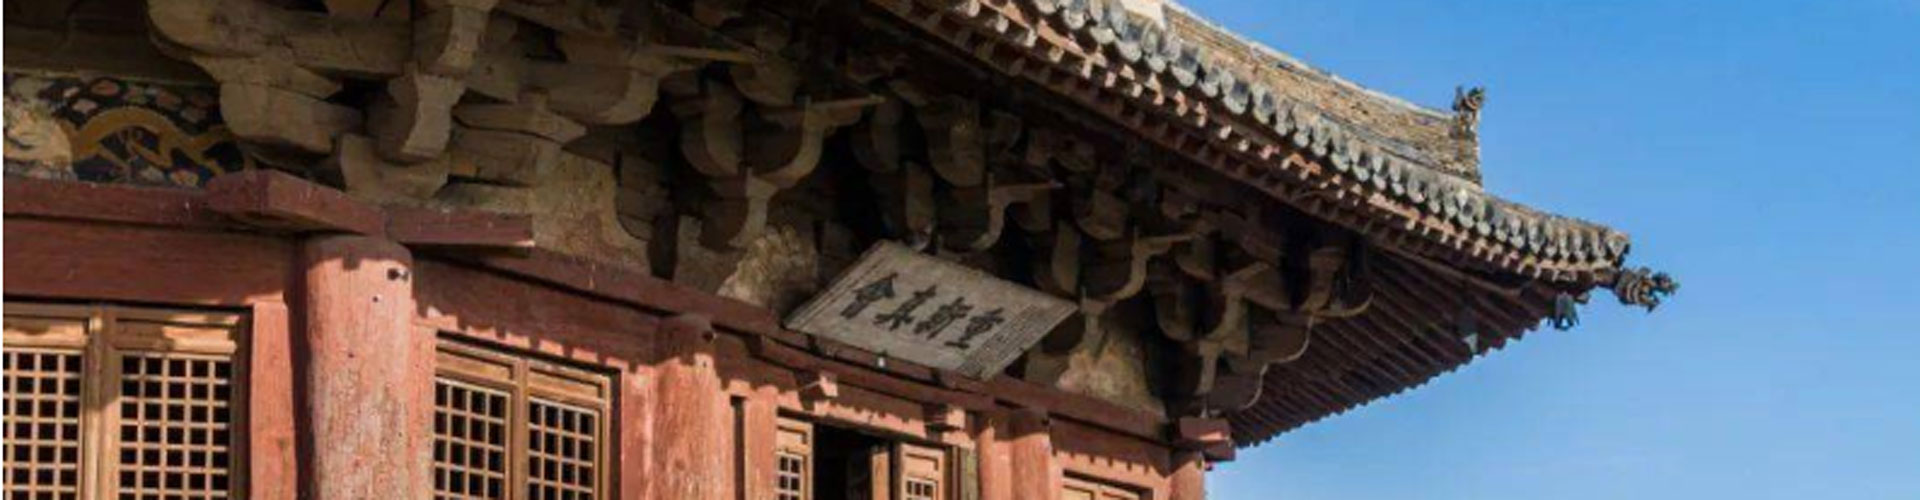 pagoda de madera e n Yingxian